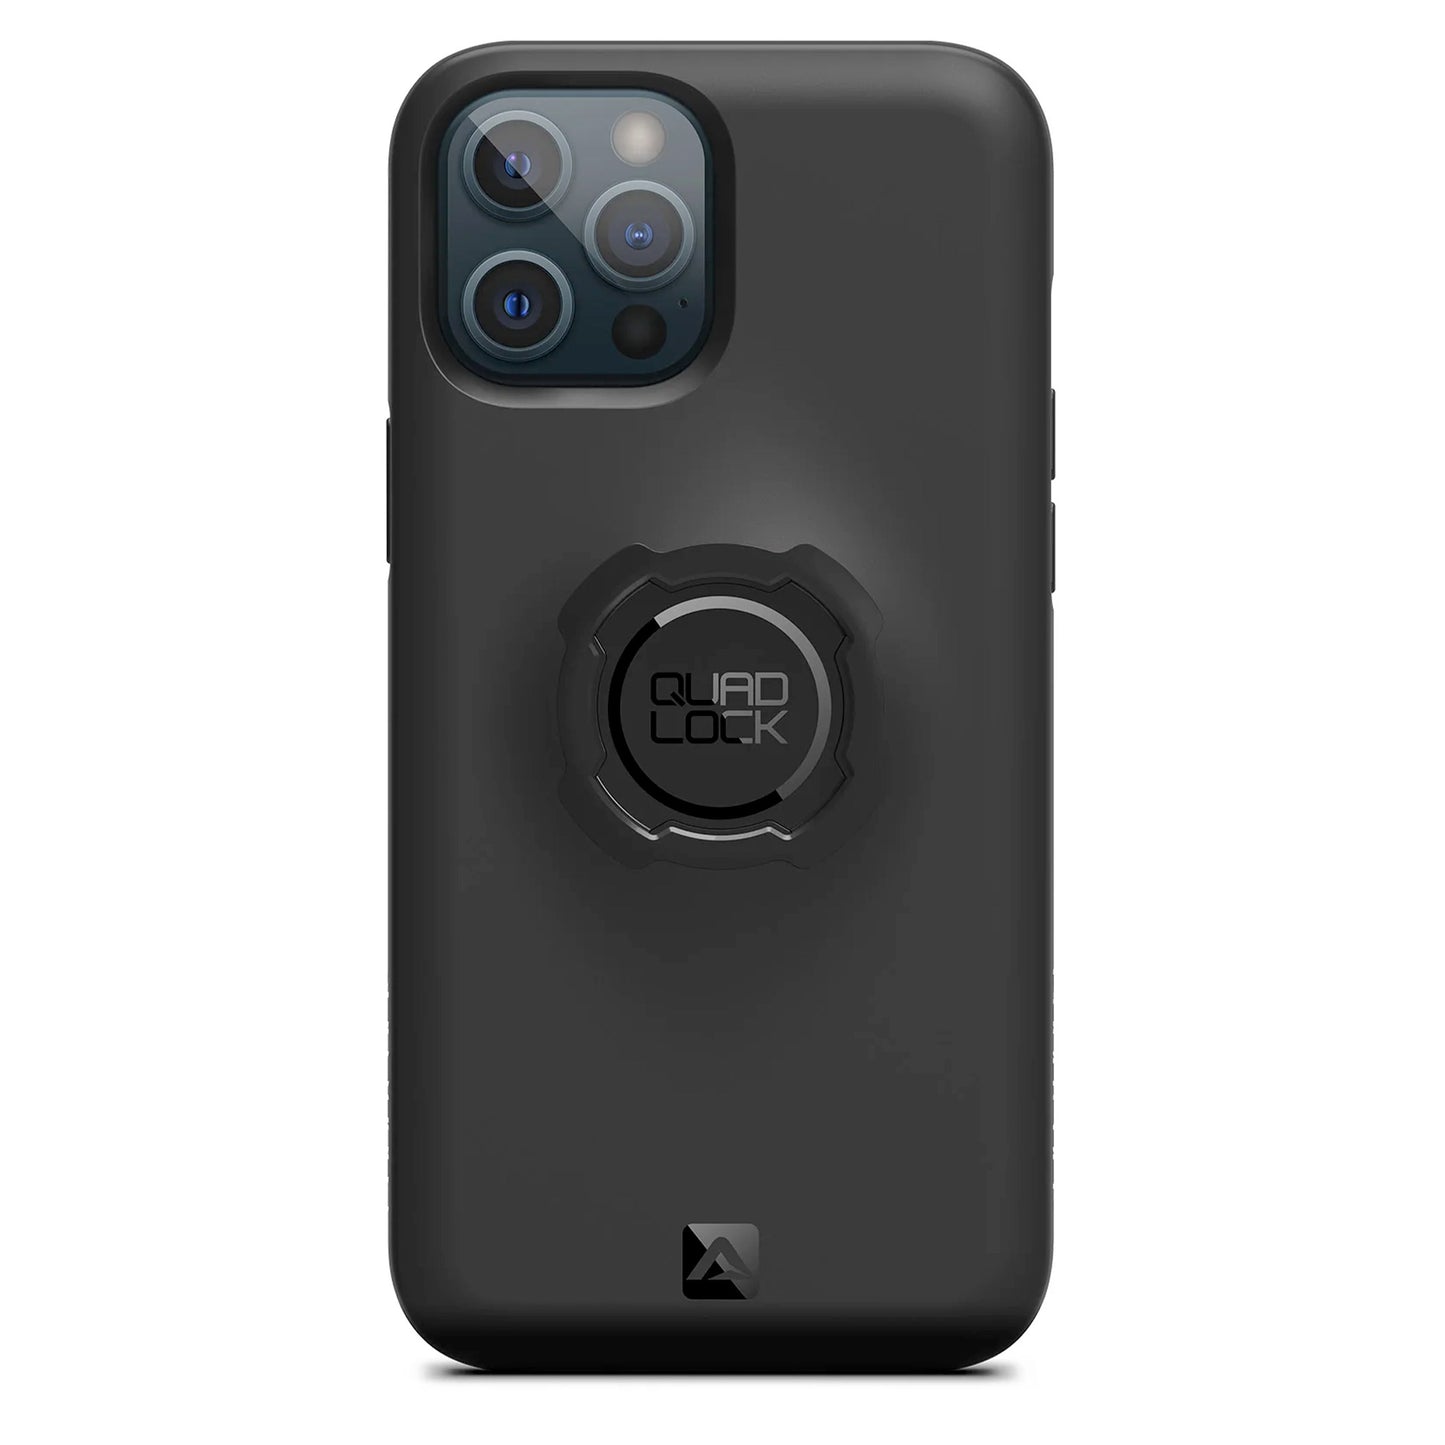 Quad Lock iPhone 11 Pro Max Case